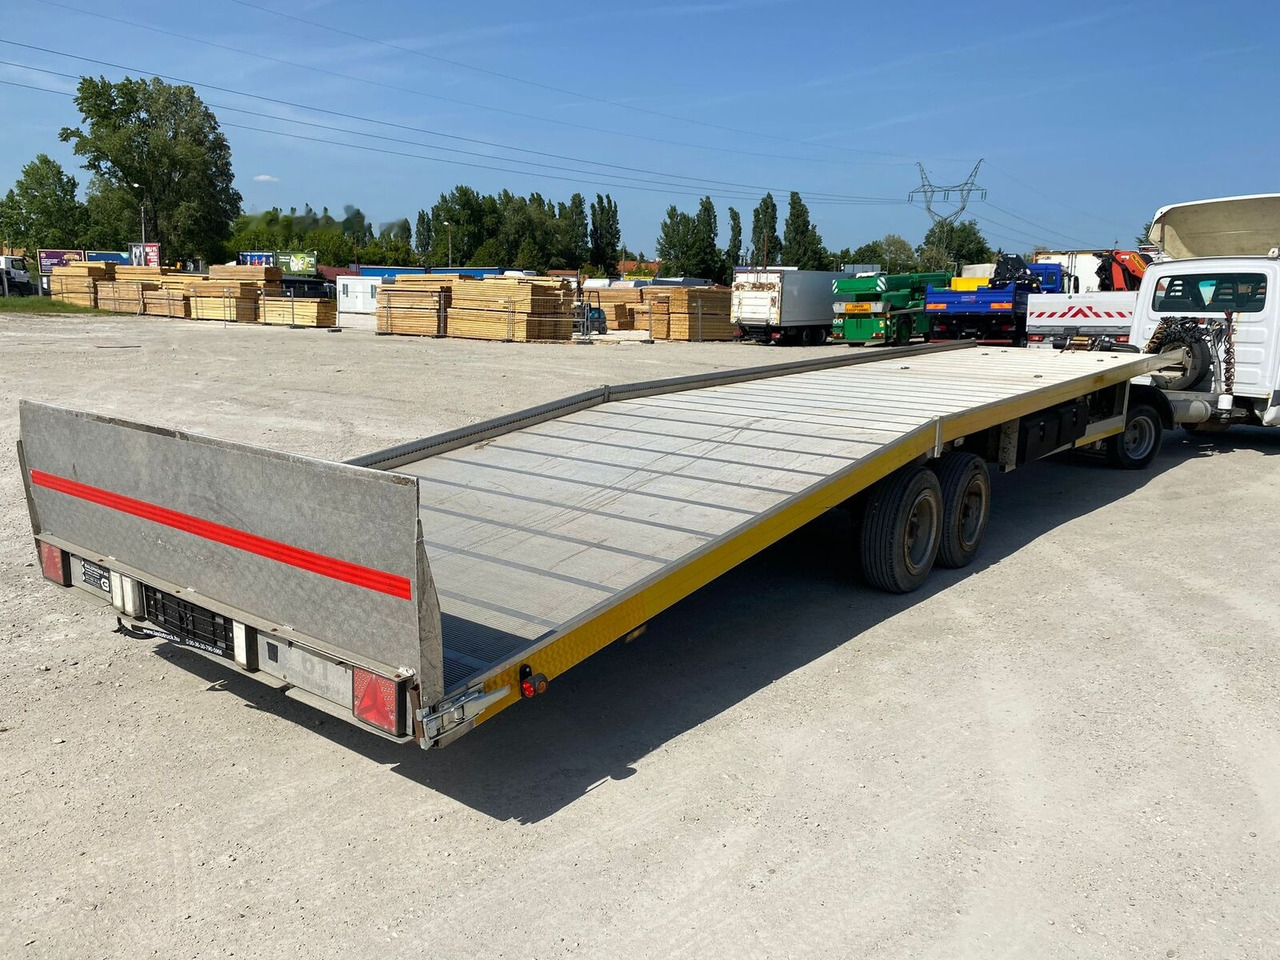 Transporter semitrailer Baldinger - car transport trailer - 10m: bilde 4